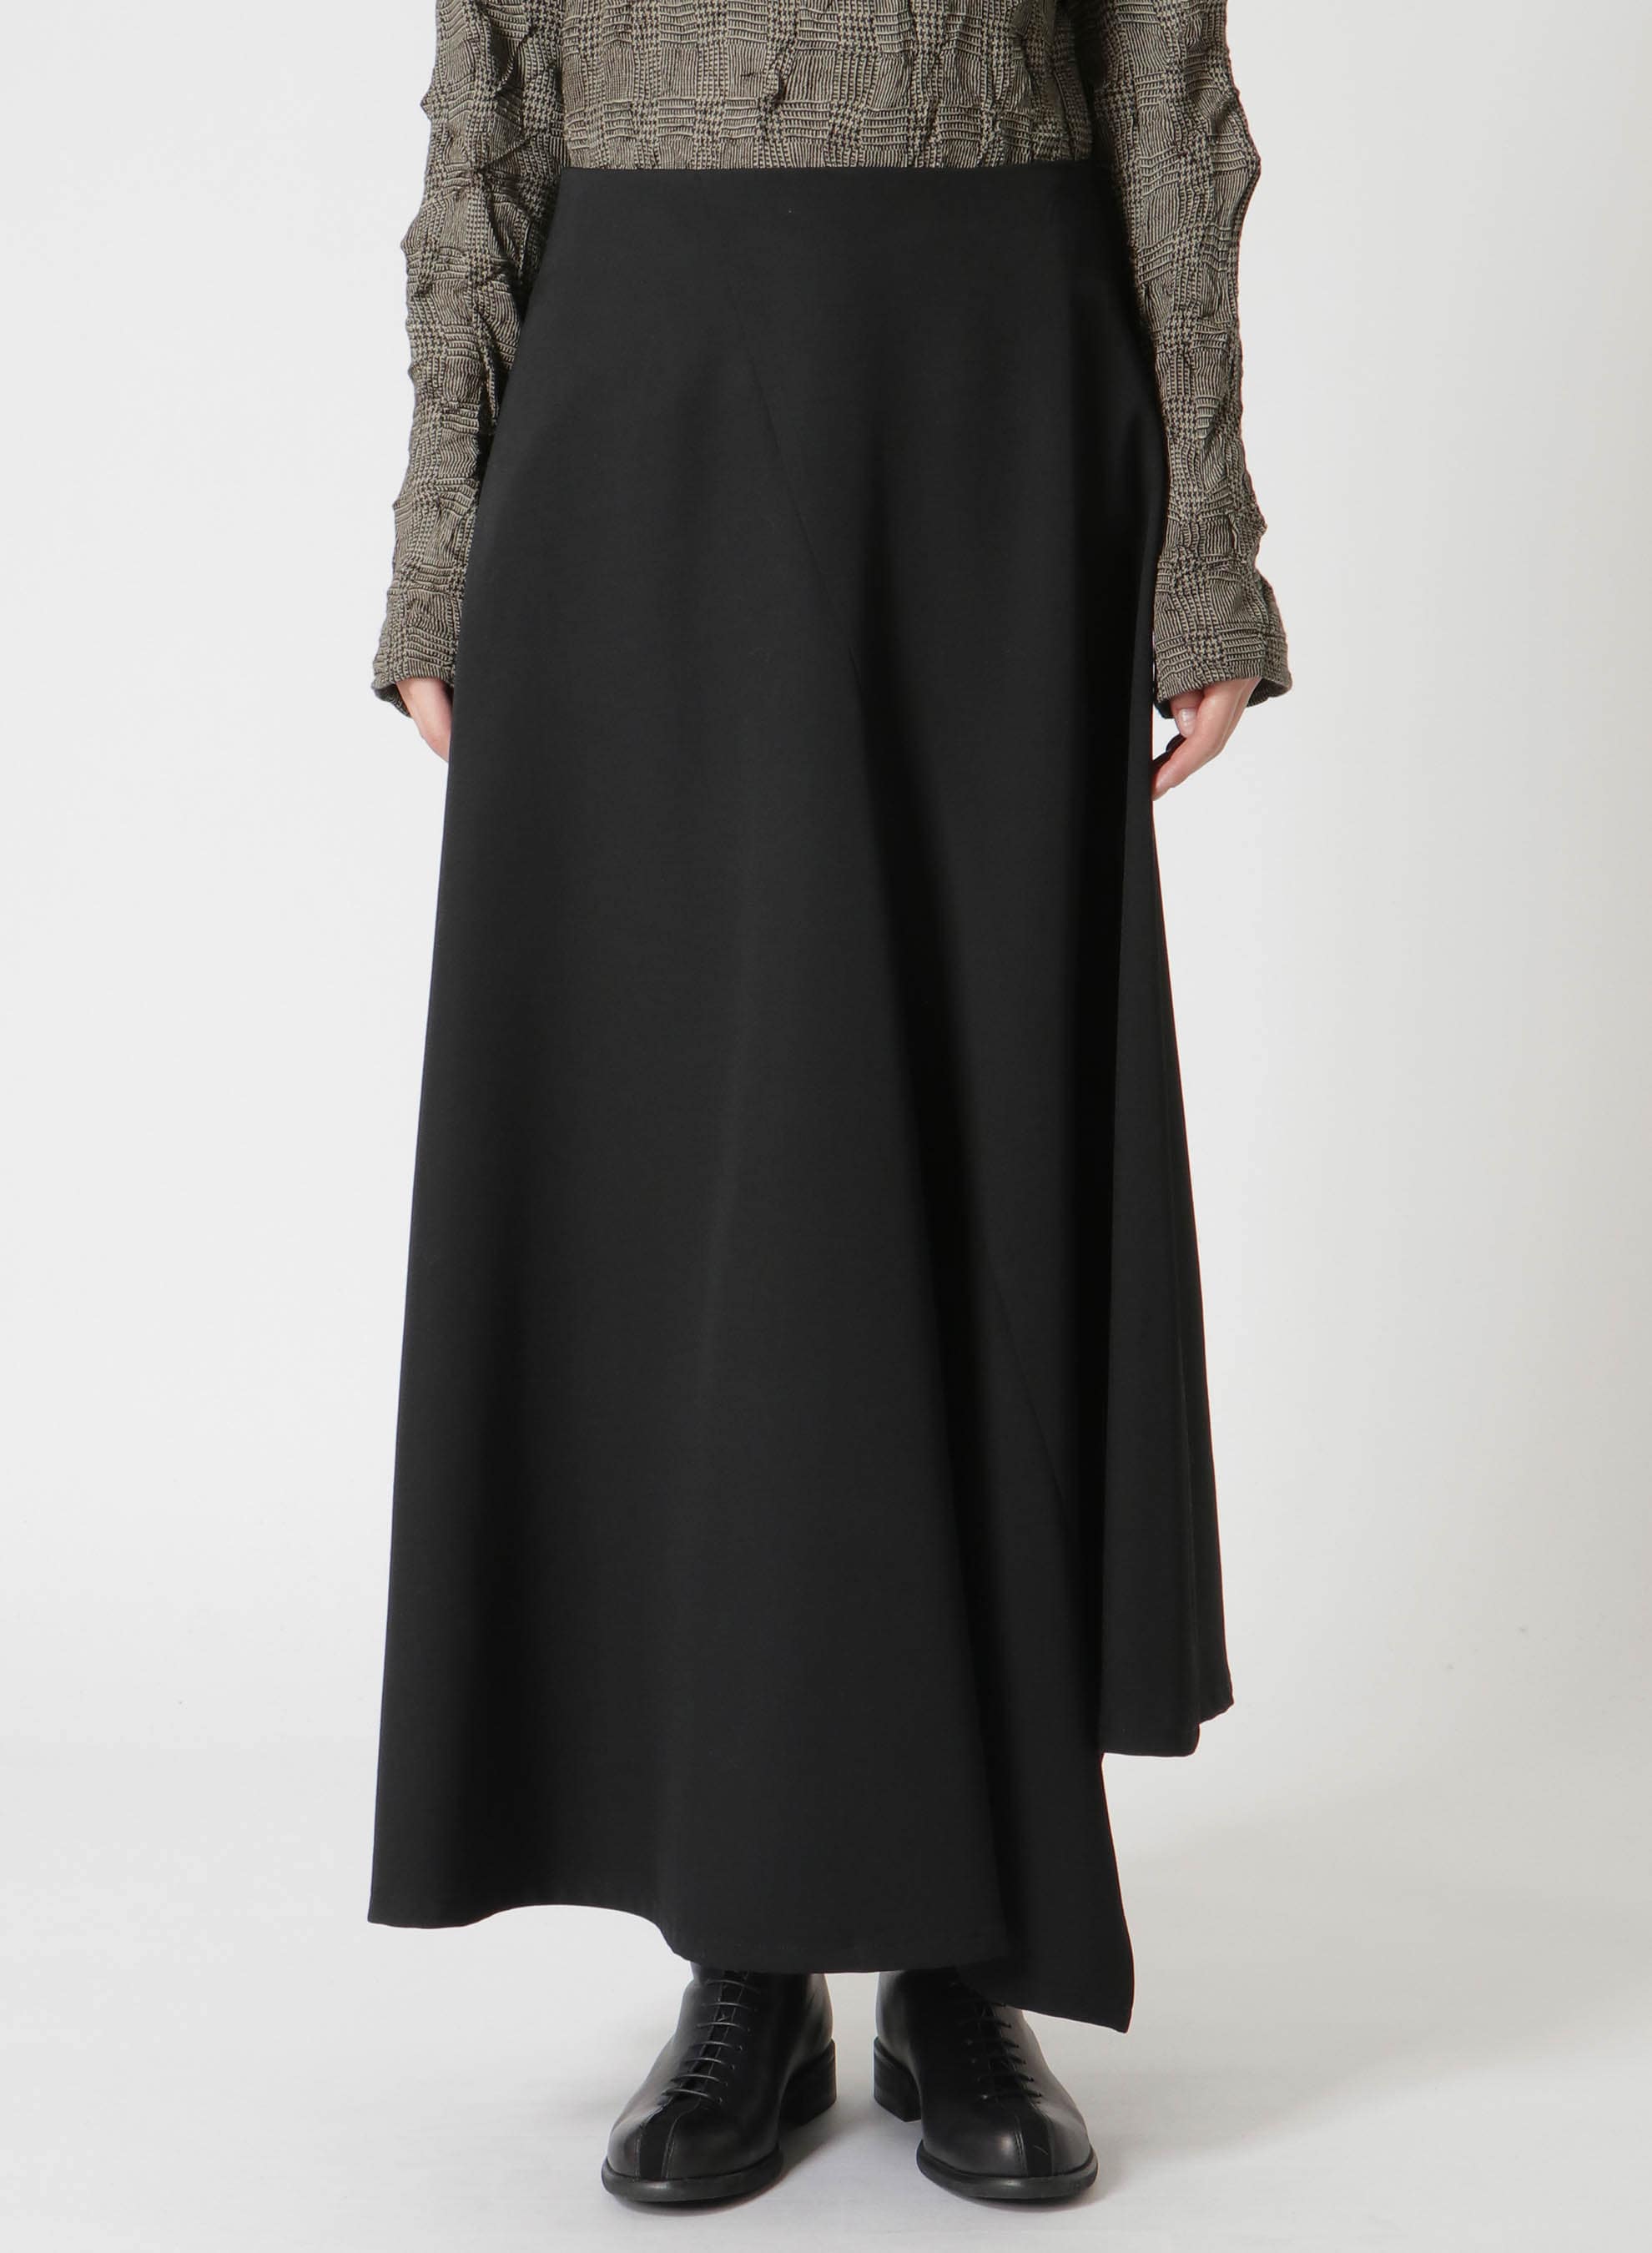 クリアランス大セール Wool Asymmetry スカート - スカート